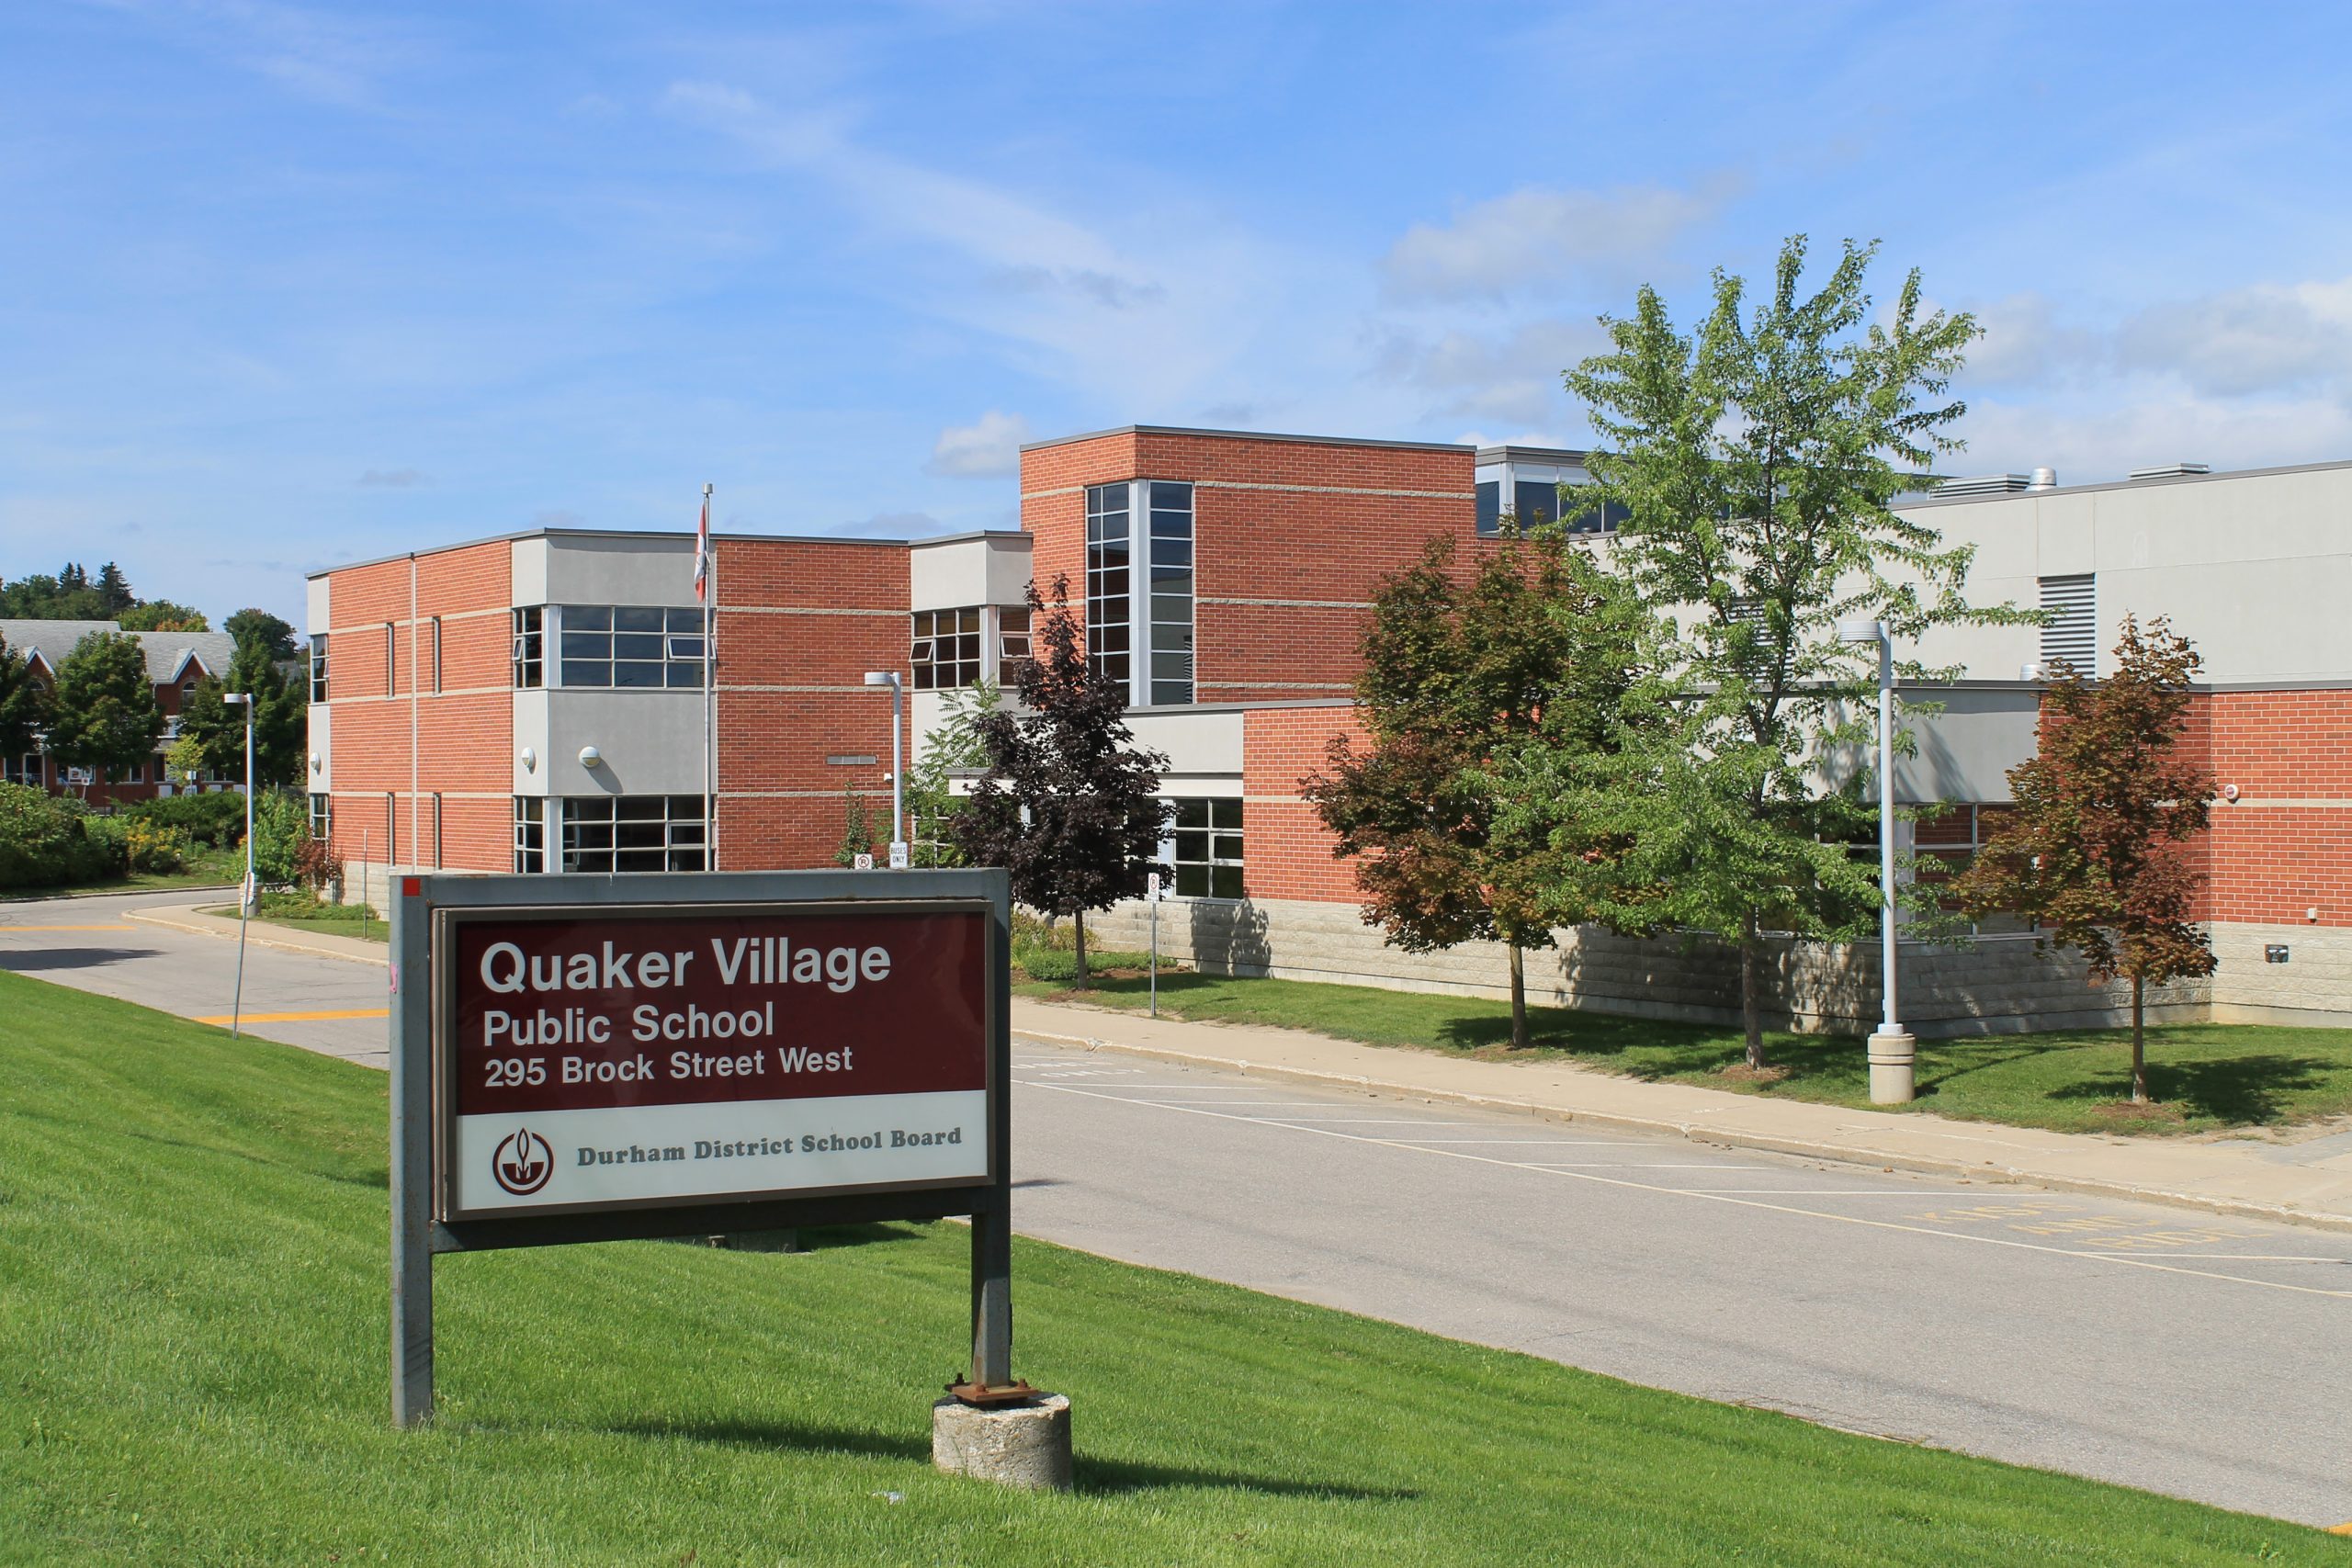 Quaker Village Public School